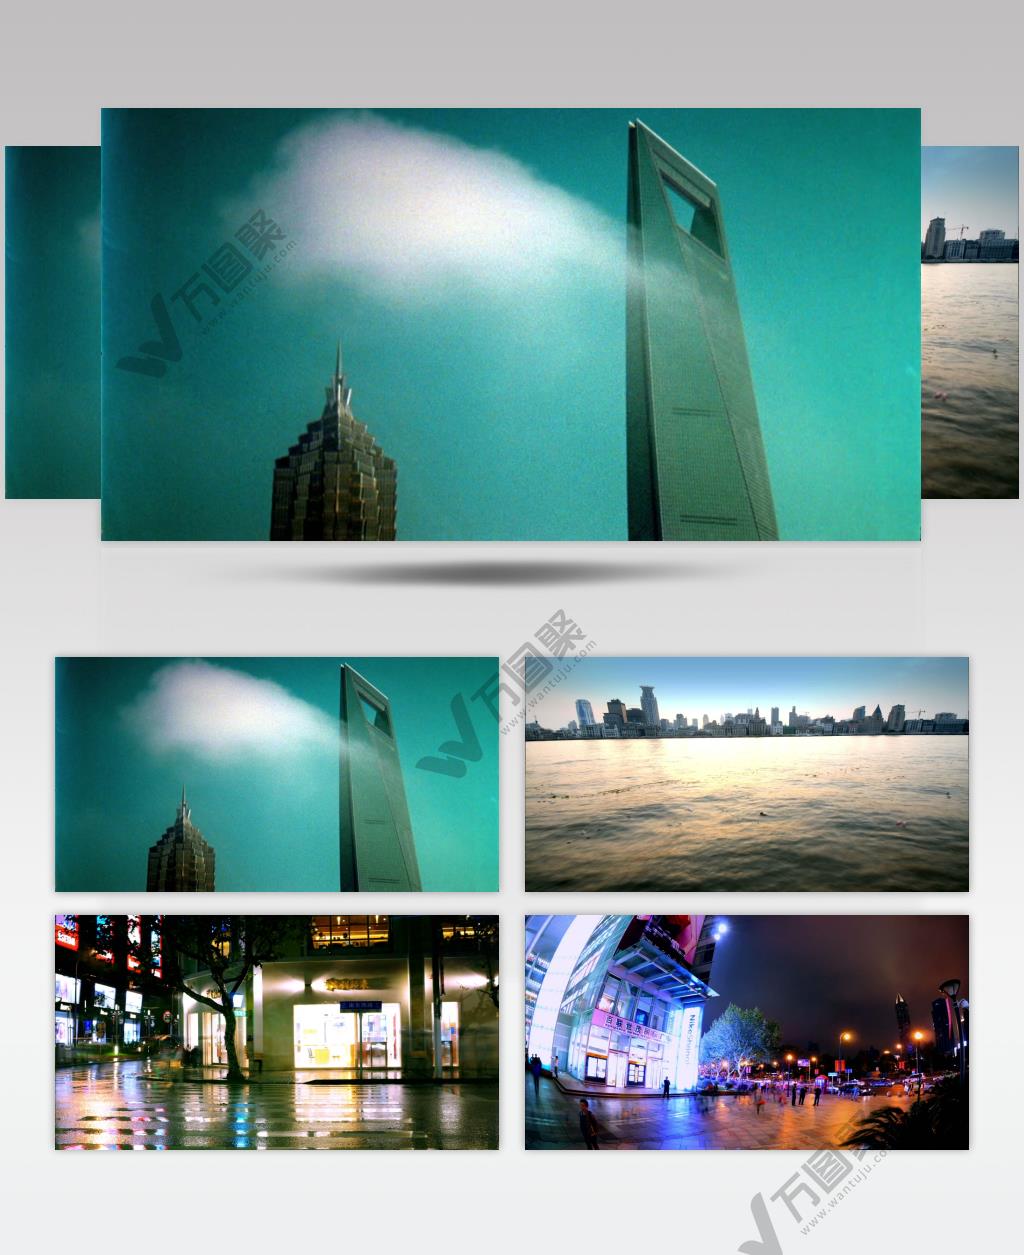 036-繁华的上海(大楼、快速夜景)_batch中国高清实拍素材宣传片